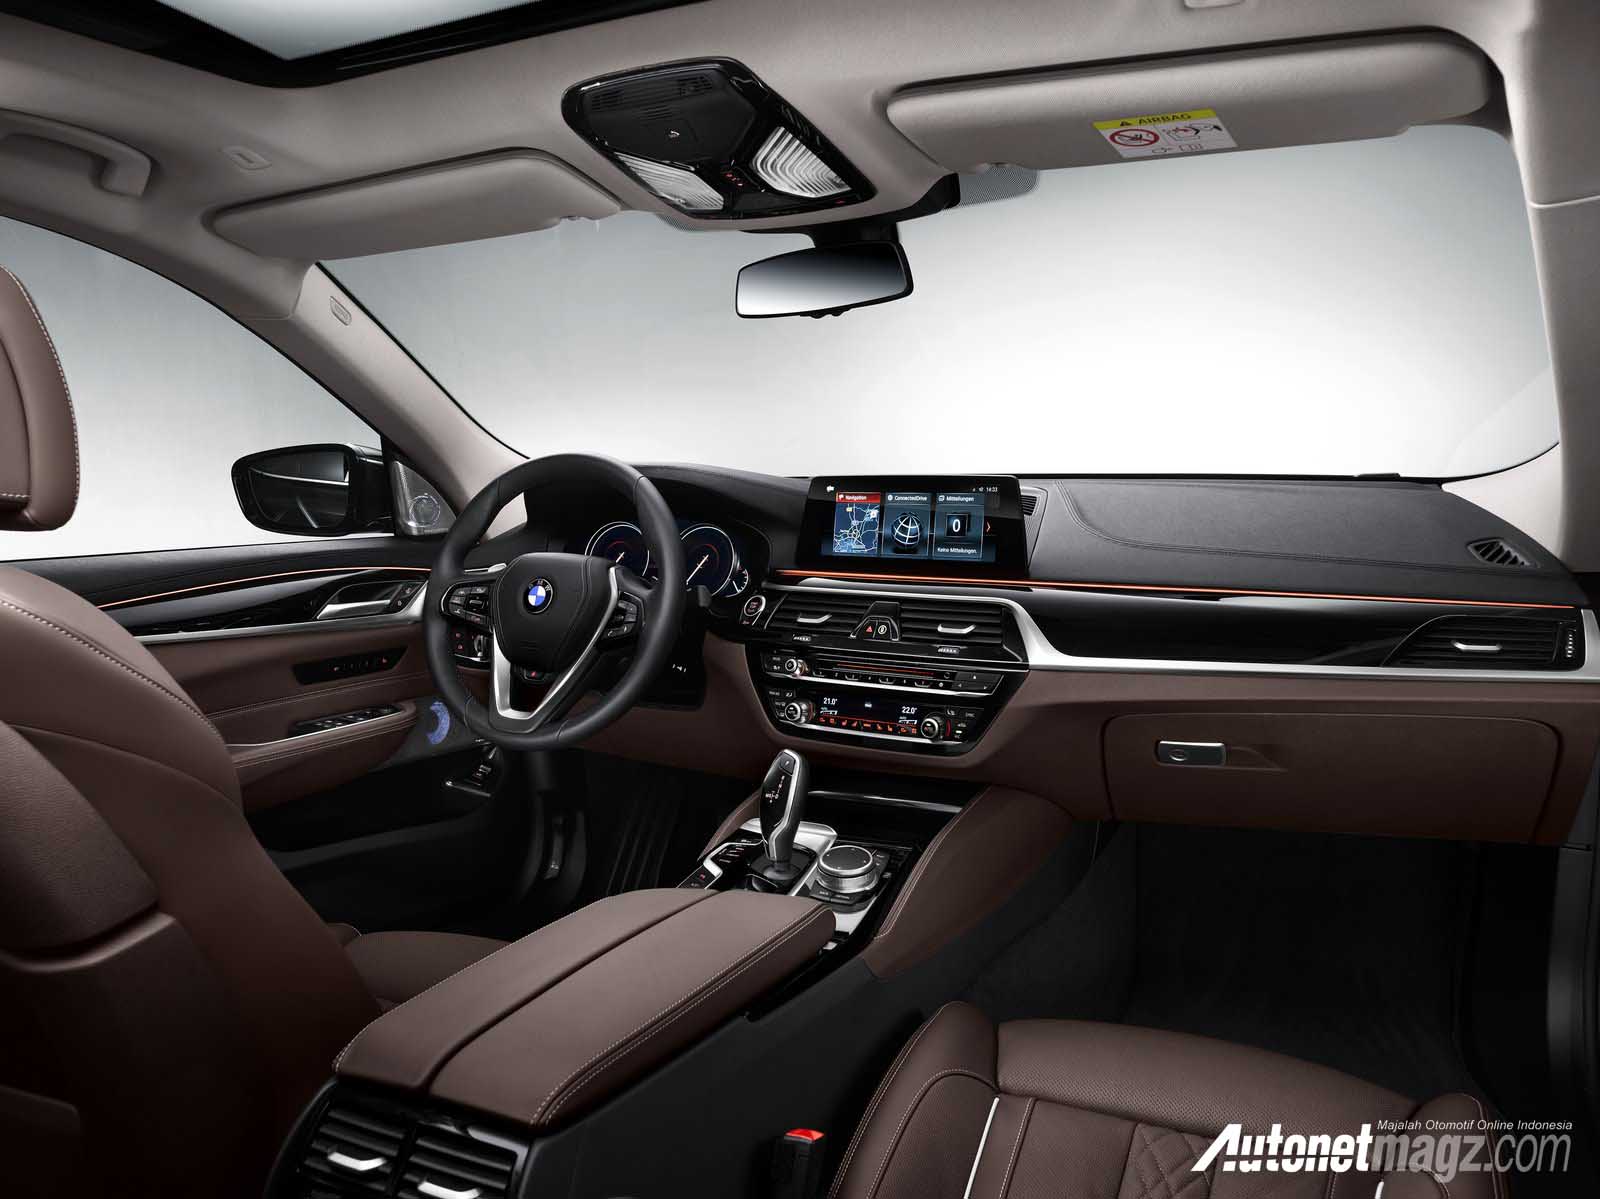 Berita, interior BMW 6 Series Grand Turismo: BMW Seri 6 Grand Turismo, Seri 5 GT yang Lebih Besar dan Cantik